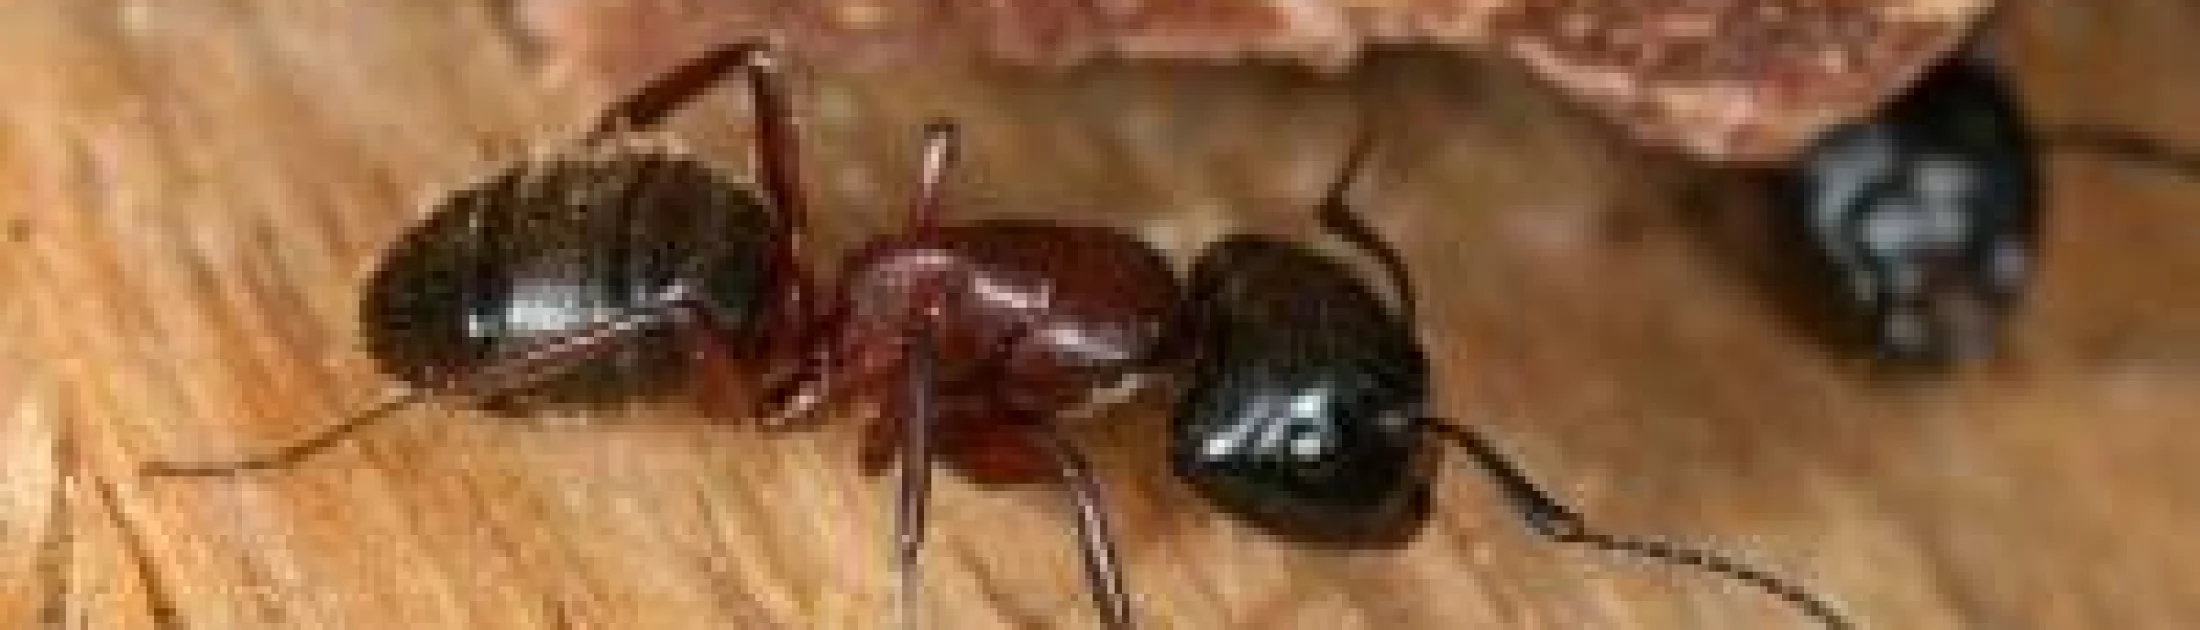 fourmis charpentières extermination